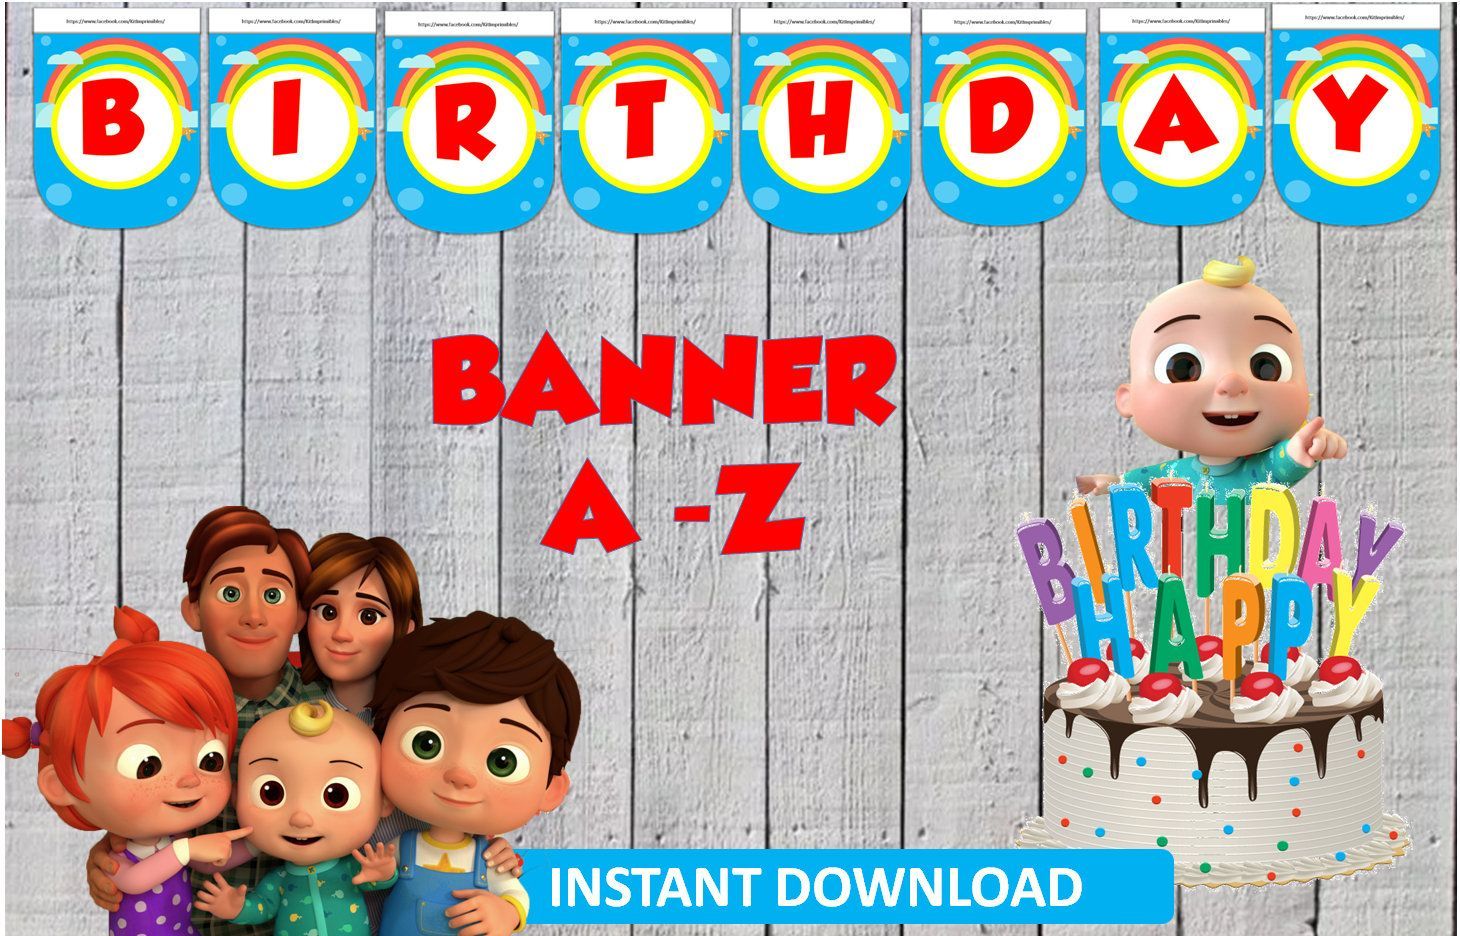 Cocomelon Banner, Party, Birthday #BannerCocomelon #HappyBirthday #Cocomelon #CocomelonBan. Pancarta de cumpleaños, Fiestas de cumpleaños para chicos, Baby shower